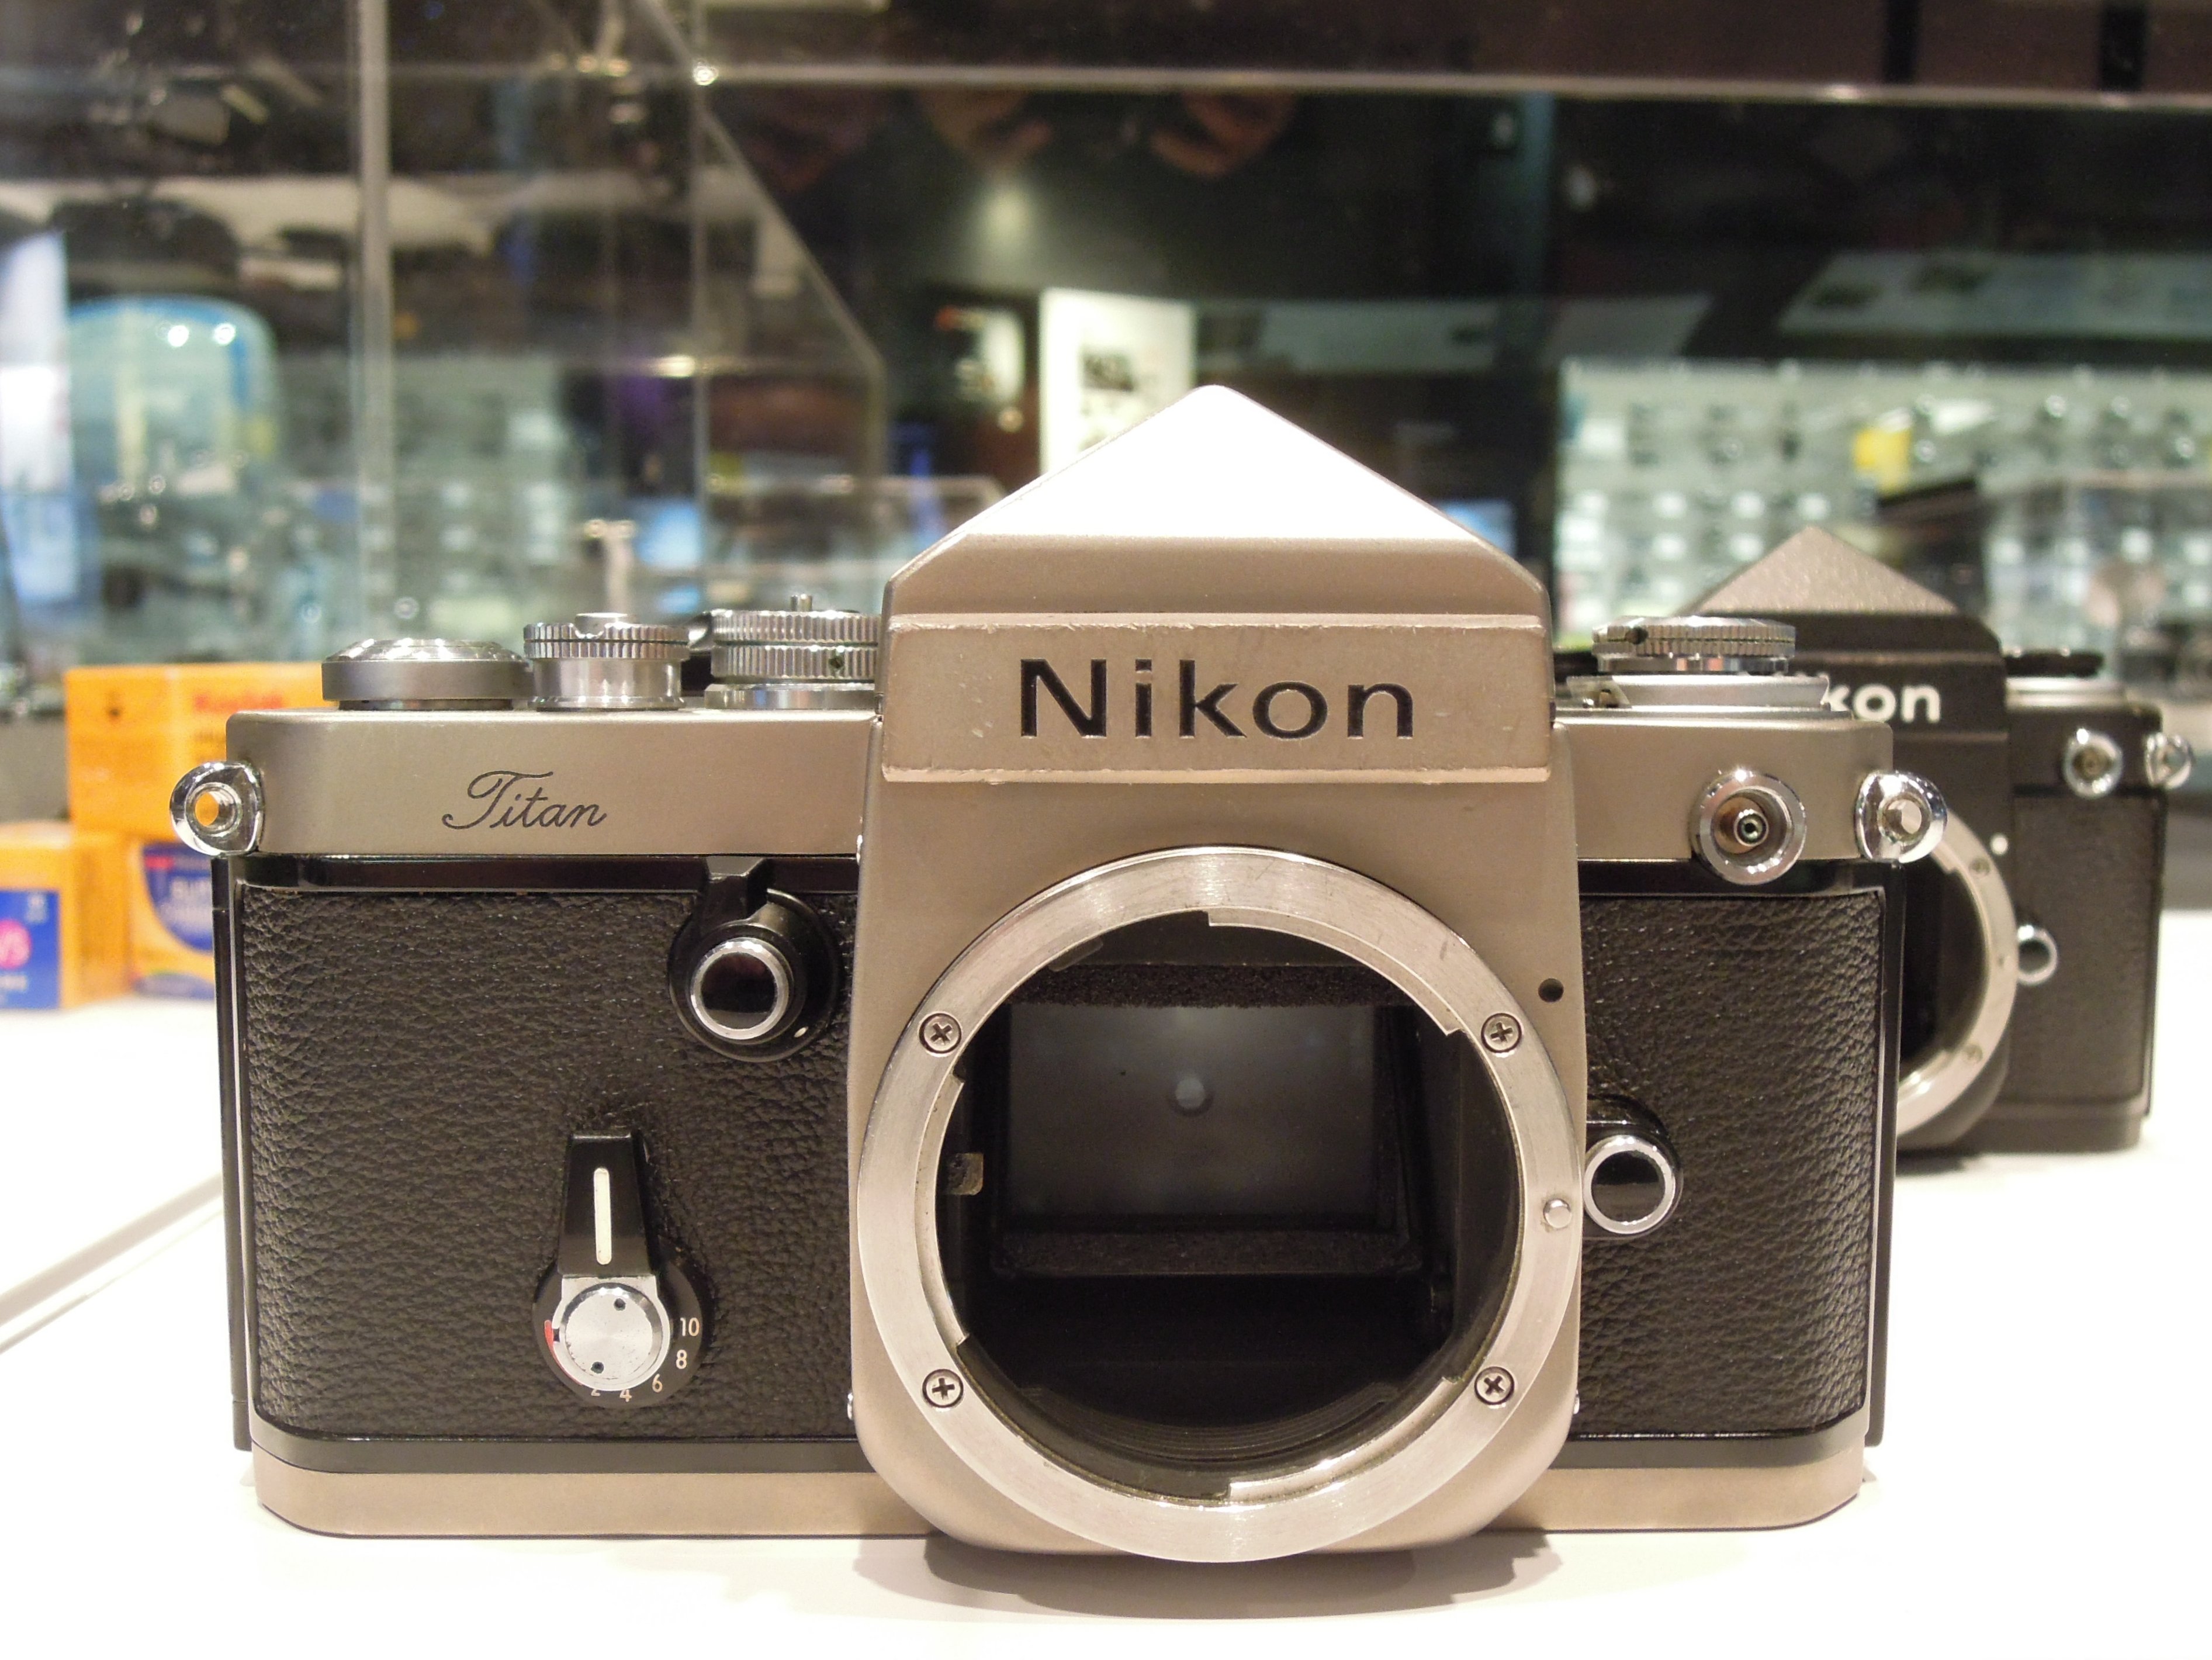 日本通販サイト ニコンF2 チタン フィルムカメラ